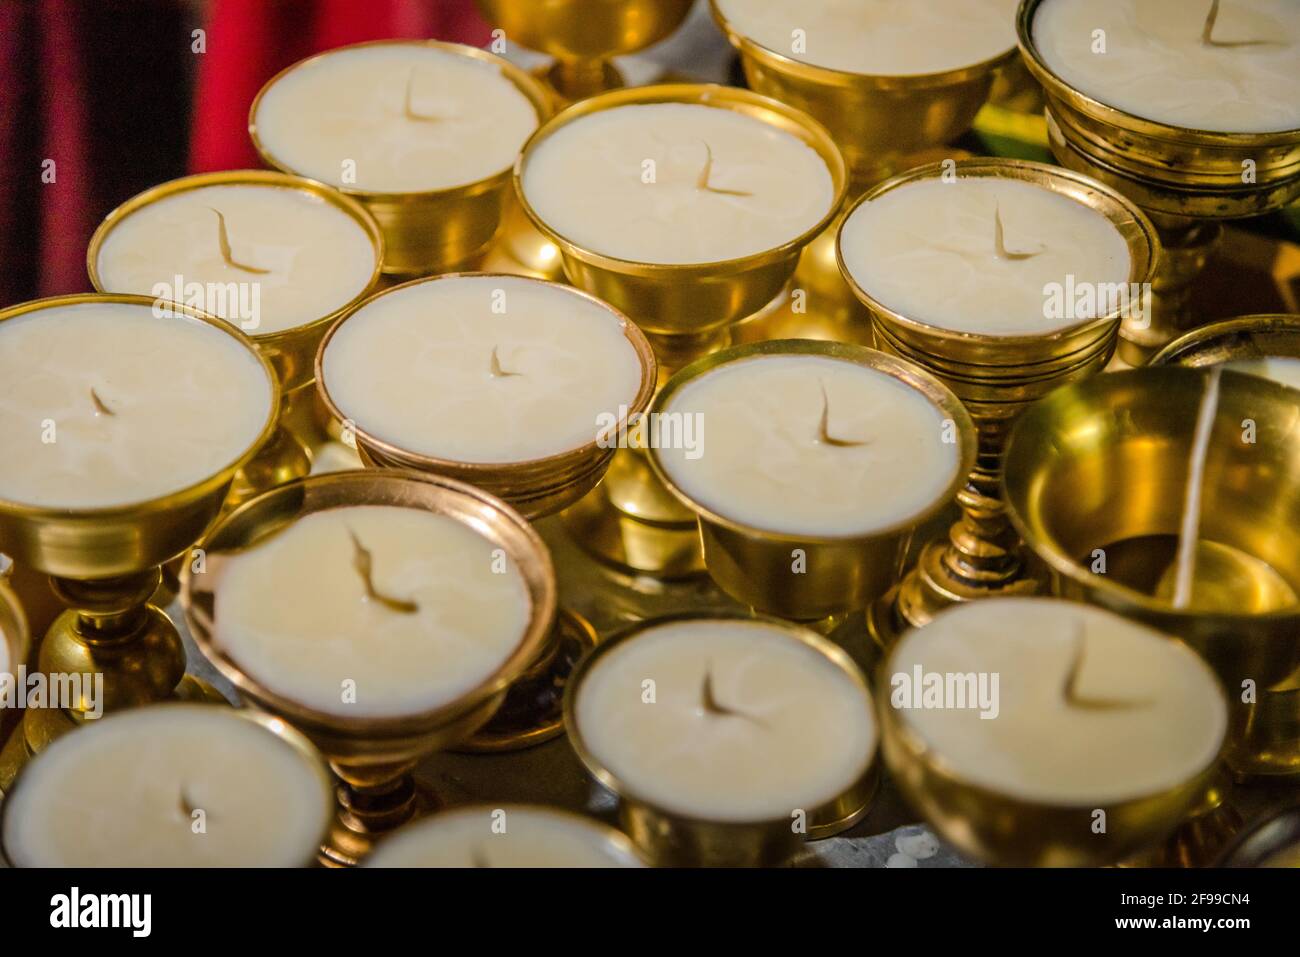 Diya di burro o lampade di ottone usate nei rituali tantrici O come offerta nel buddismo tibetano è caratteristica cospicua di Templi e monasti buddisti tibetani Foto Stock